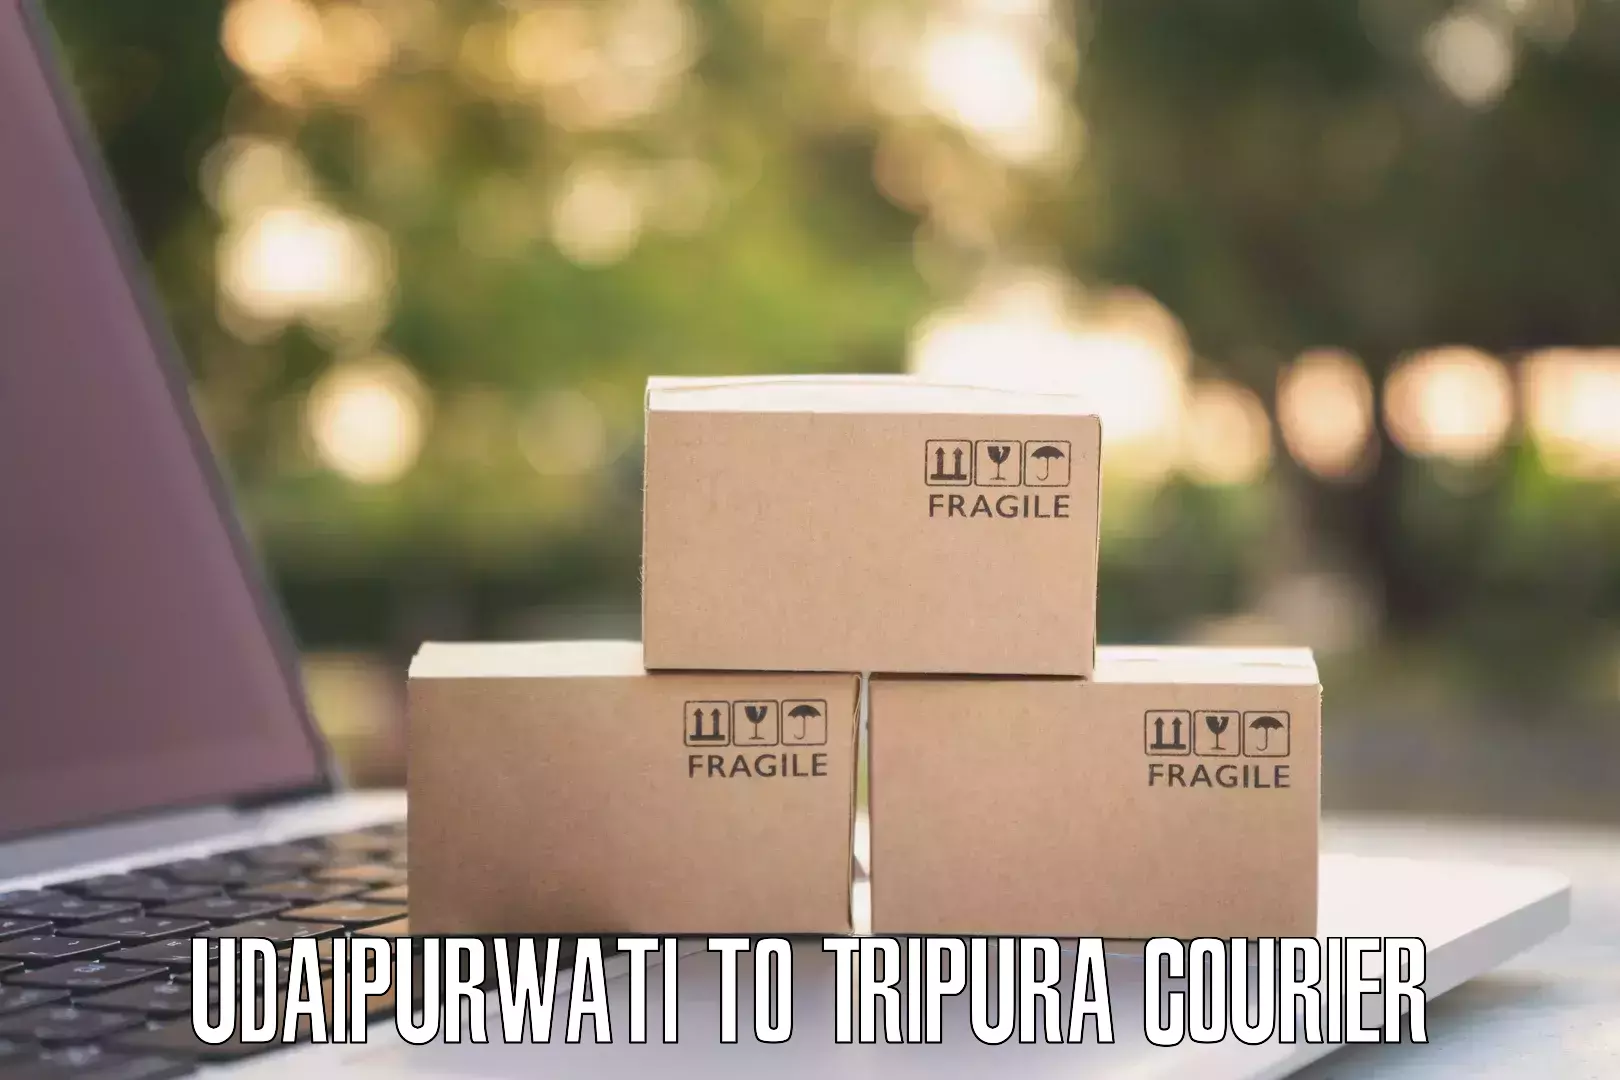 Door-to-door shipment Udaipurwati to Udaipur Tripura